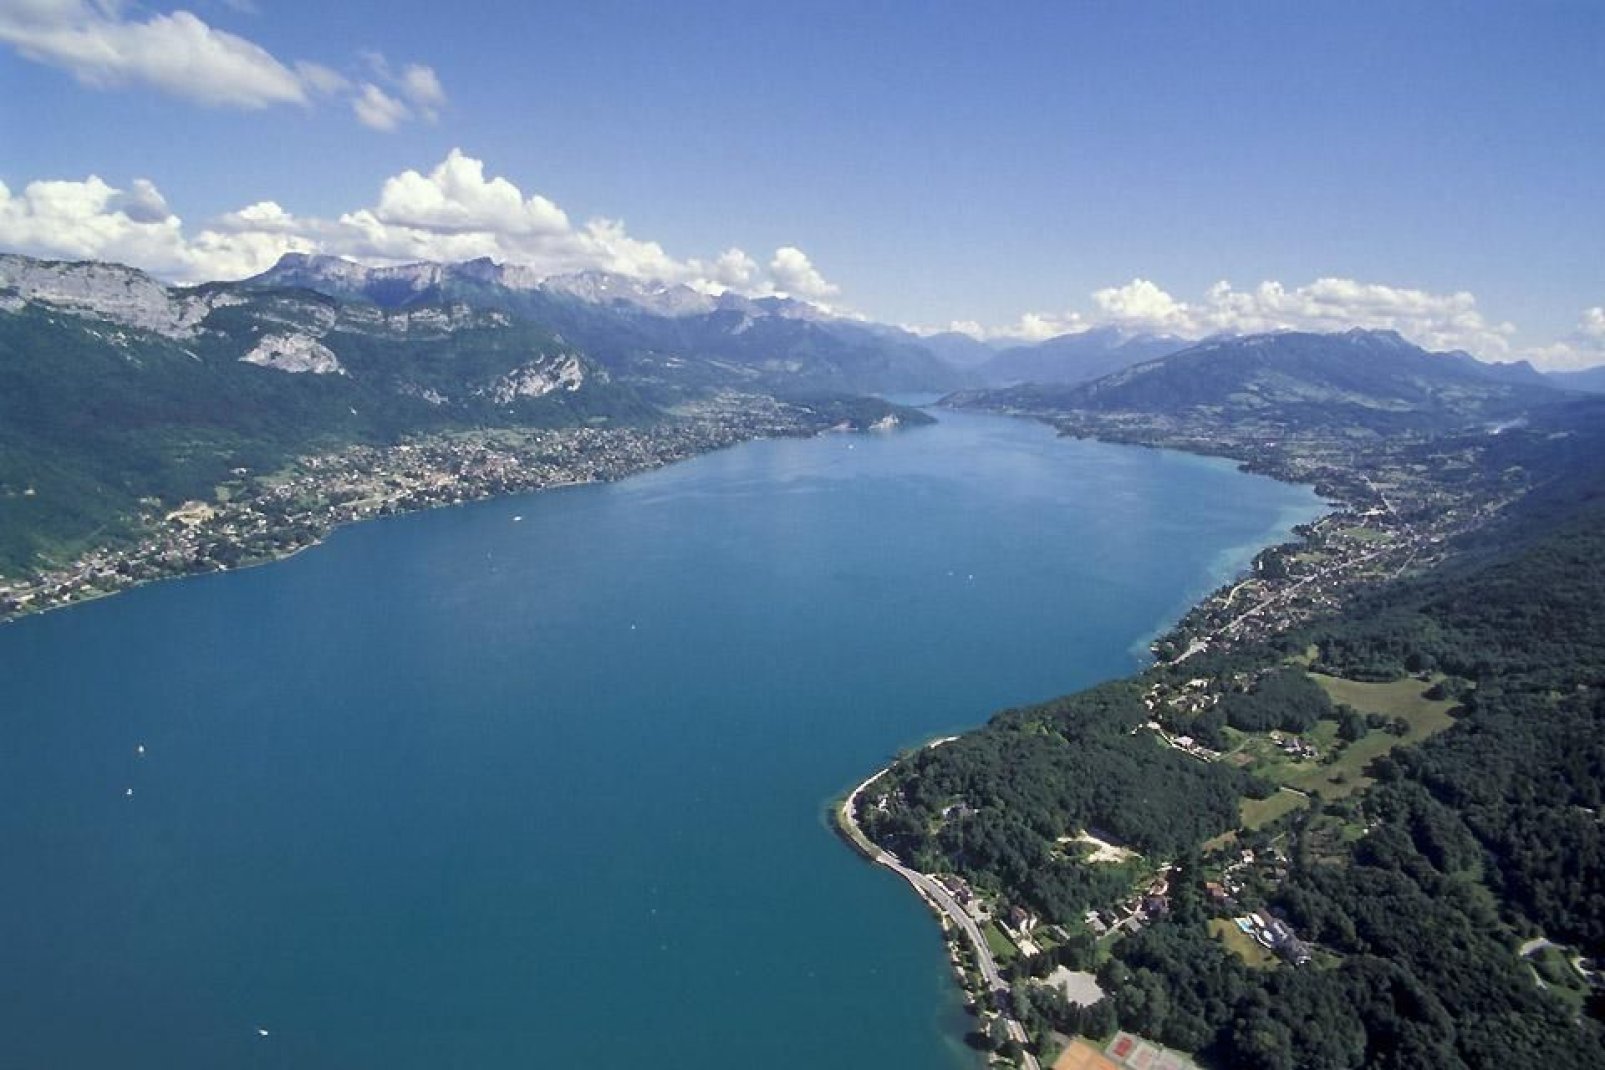 La superficie de ce lac, aussi surnommé le lac bleu, est de près de 28 km. Cet endroit bénéficie d'un environnement unique, avec une faune et une flore qui n'ont pas leur égal.